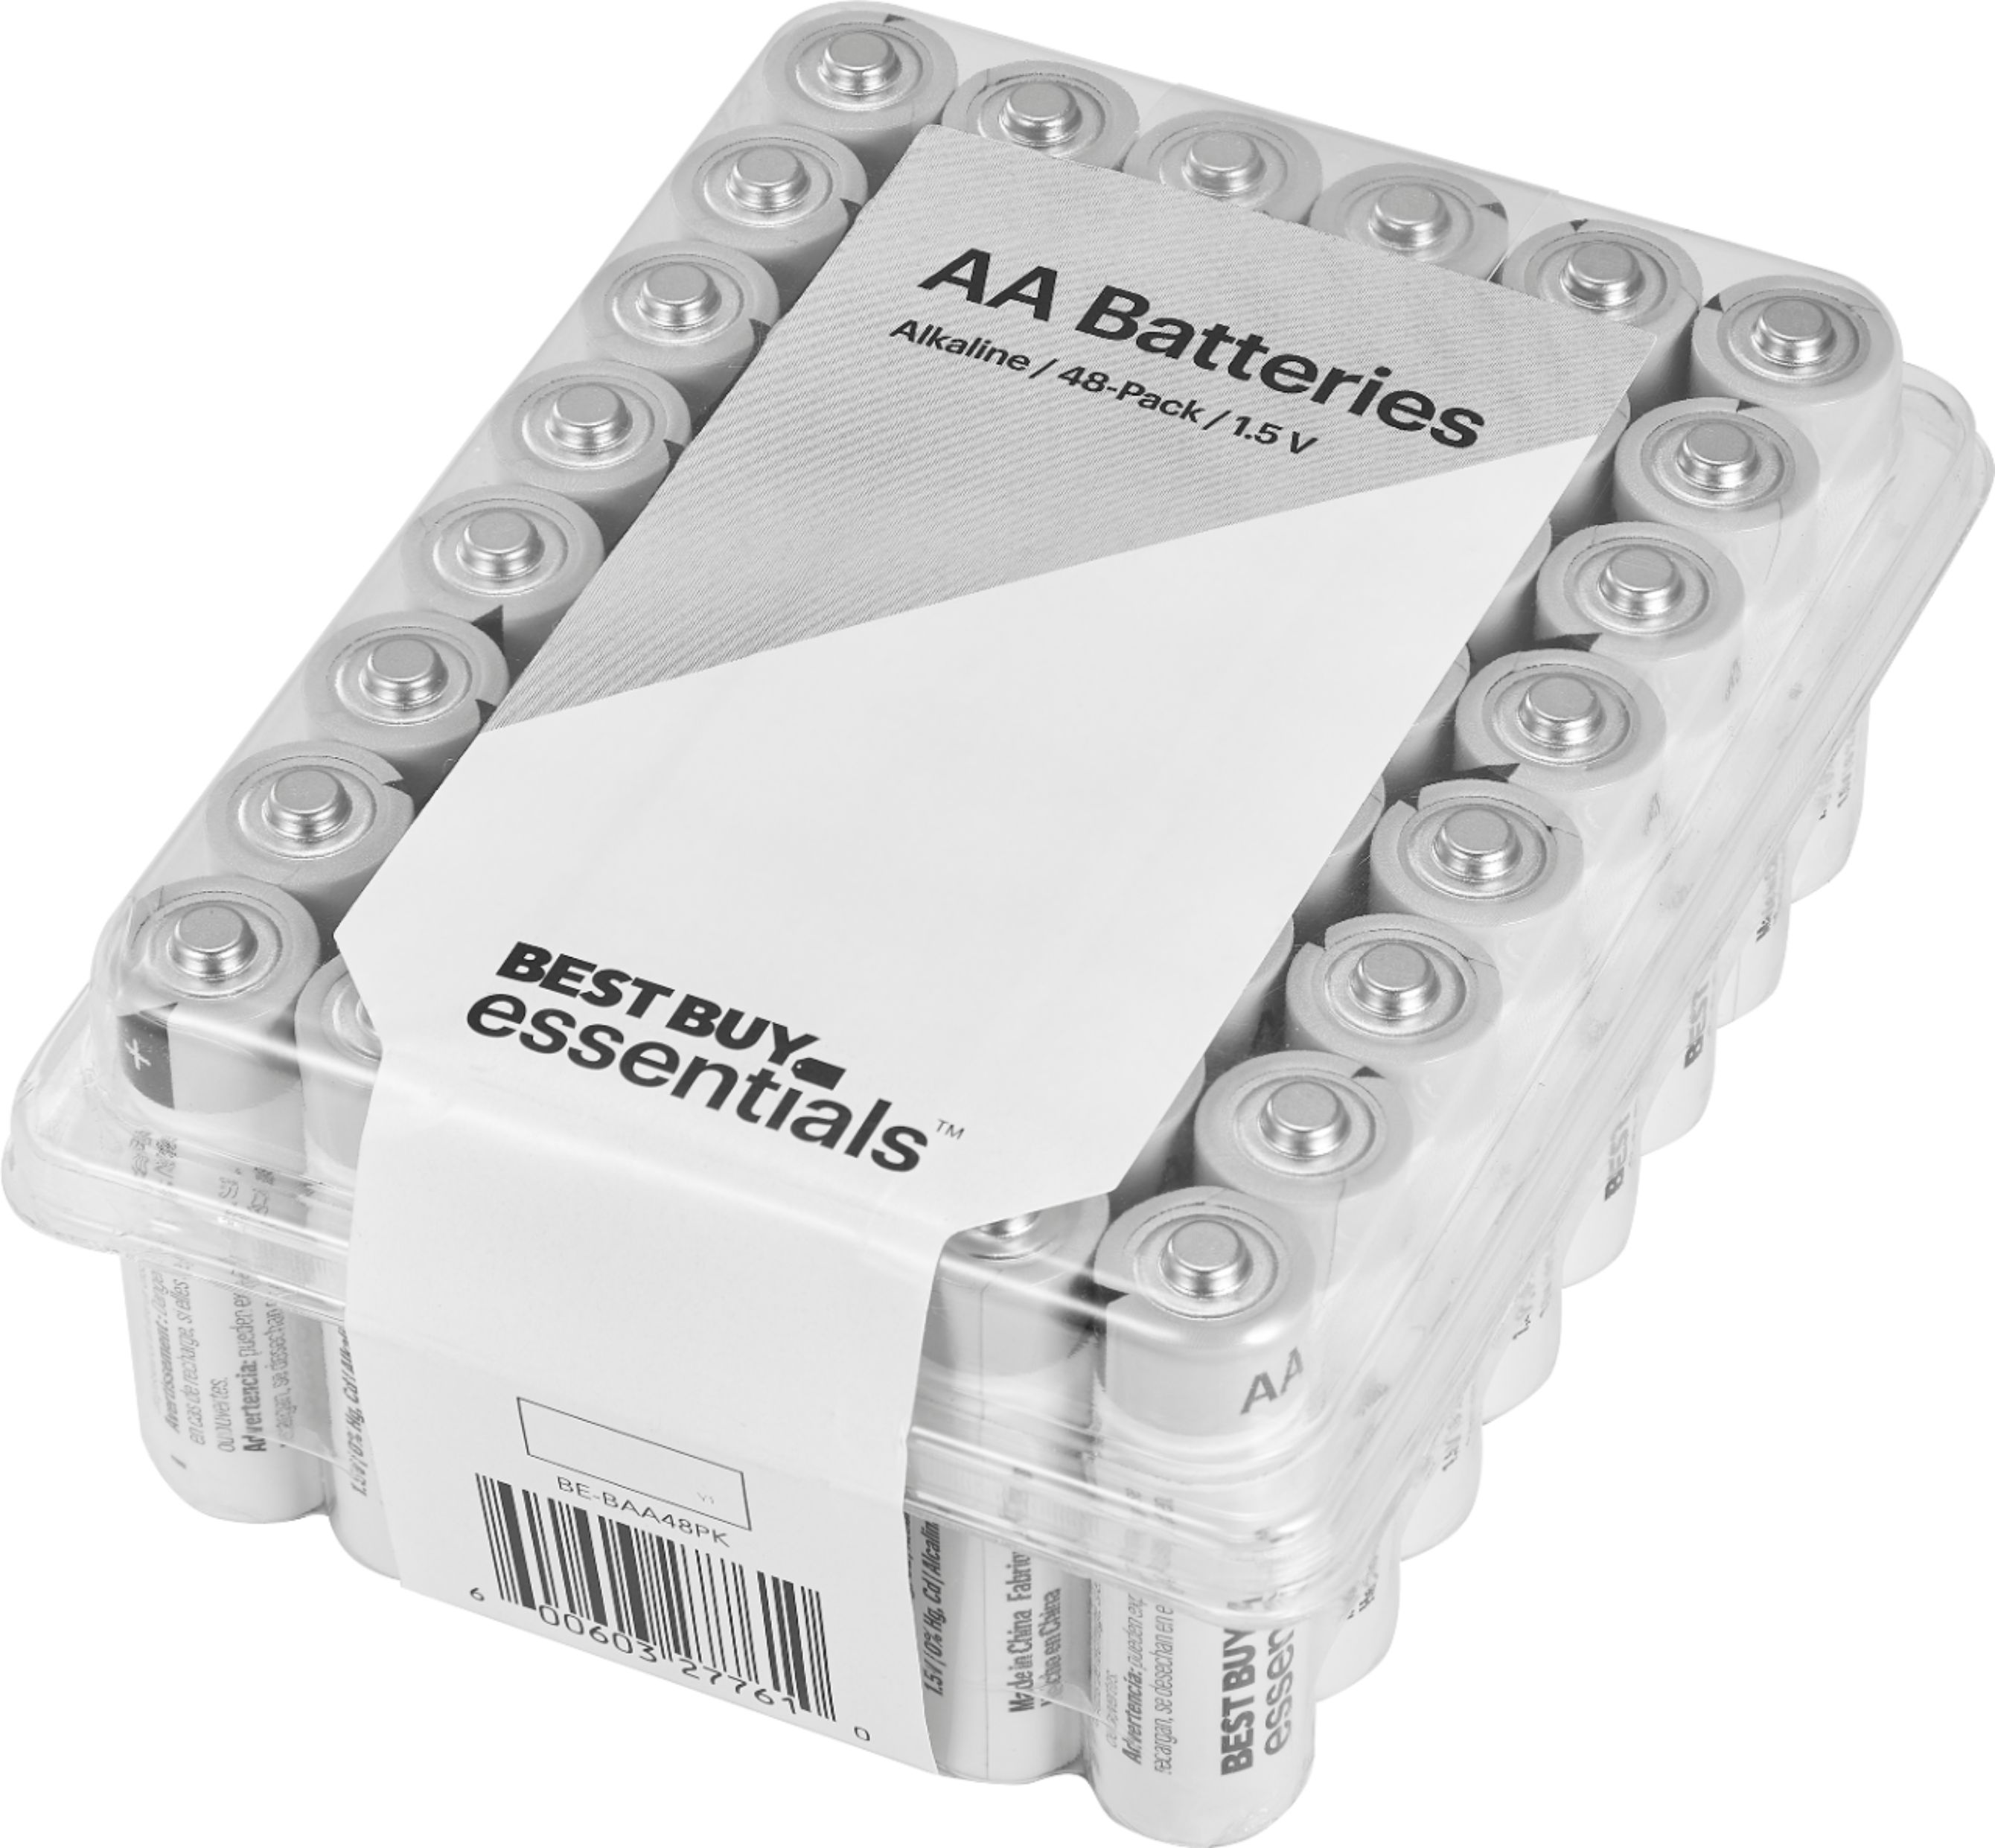 Kiks evne rapport Best Buy essentials™ AA Batteries (48-Pack) BE-BAA48PK - Best Buy